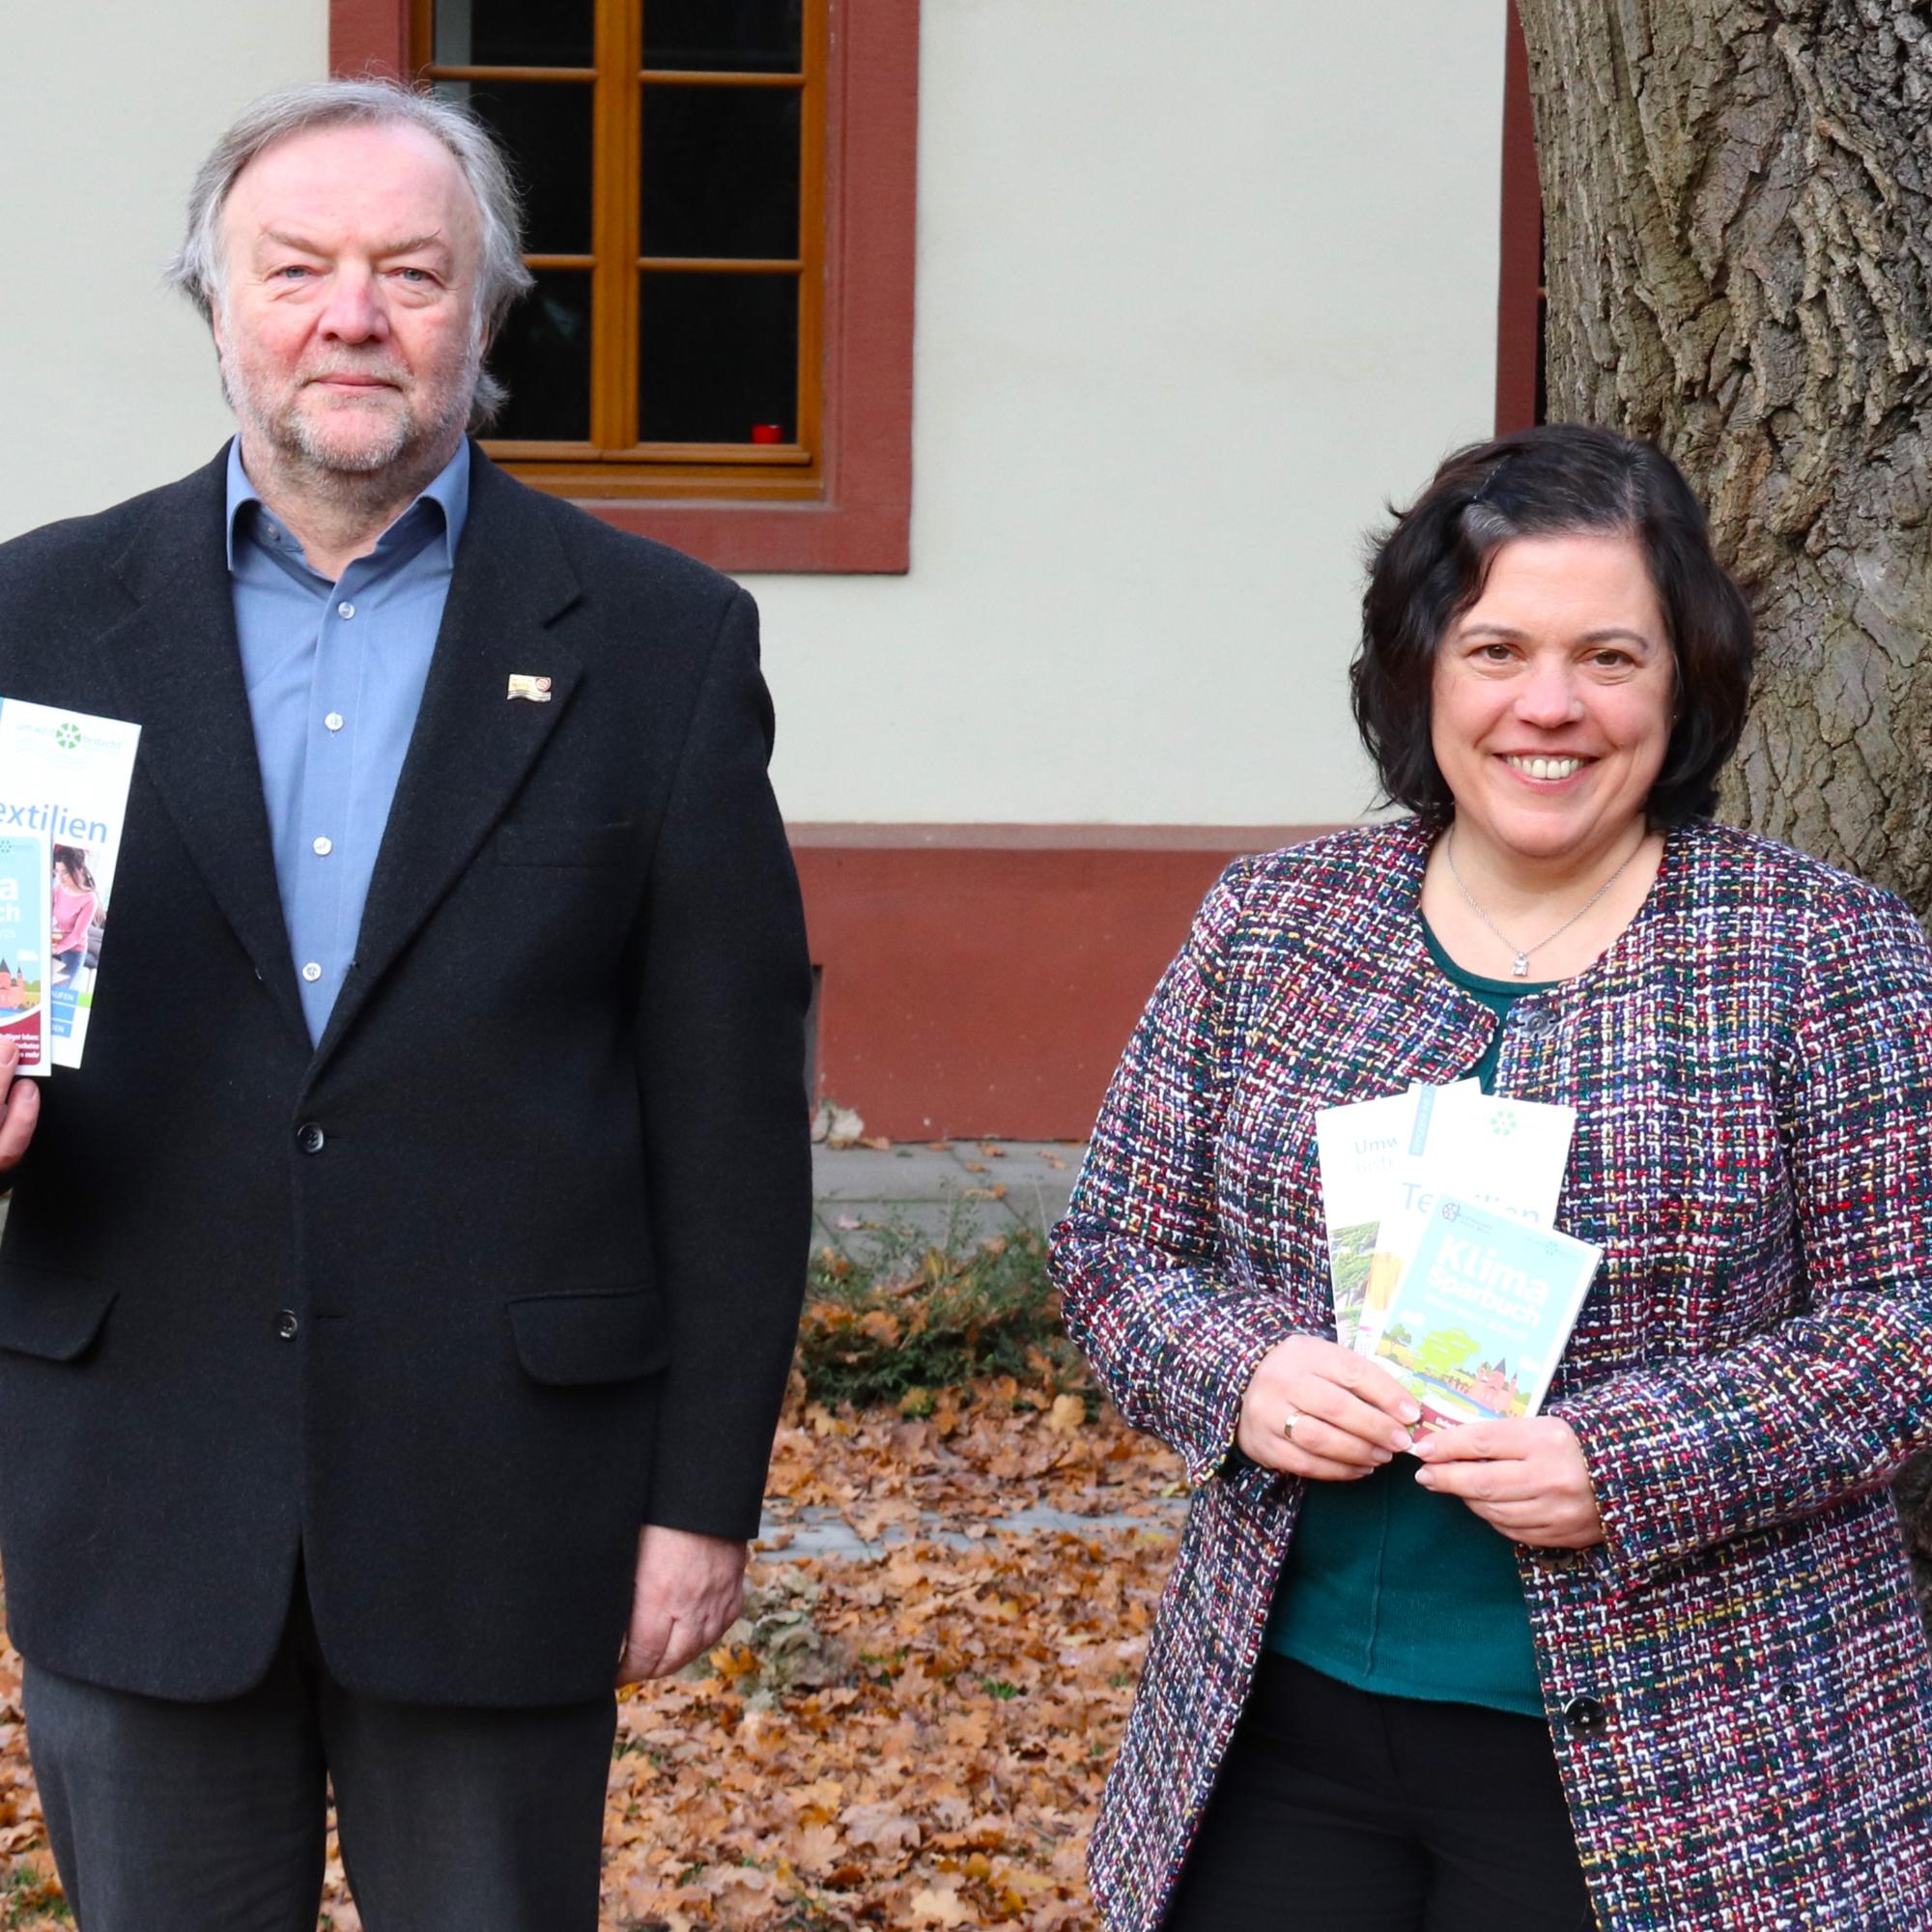 Die Bevollmächtigte des Generalvikars, Ordinariatsdirektorin Stephanie Rieth, präsentierte gemeinsam mit dem Umweltbeauftragten des Bistums Mainz, Marcus Grünewald, das neue Klimasparbuch, den Tippgeber 